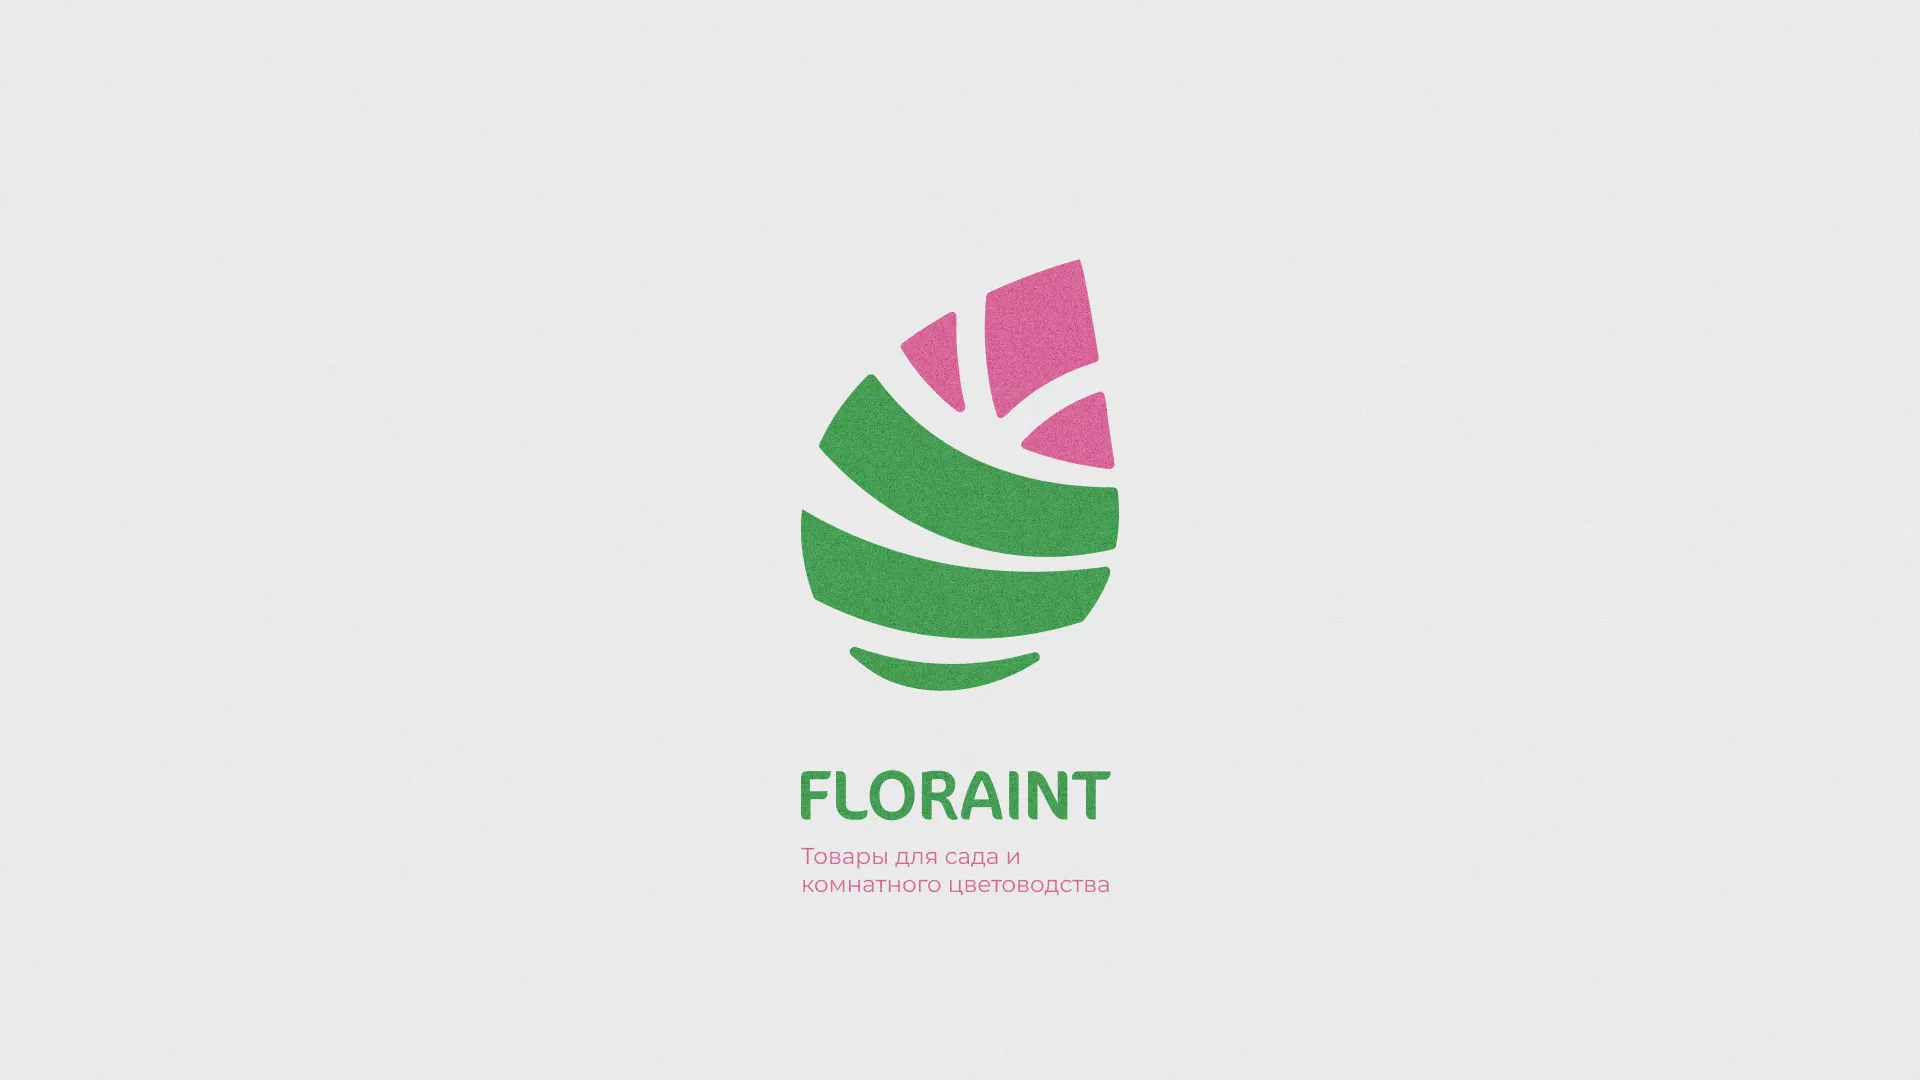 Разработка оформления профиля Instagram для магазина «Floraint» в Москве